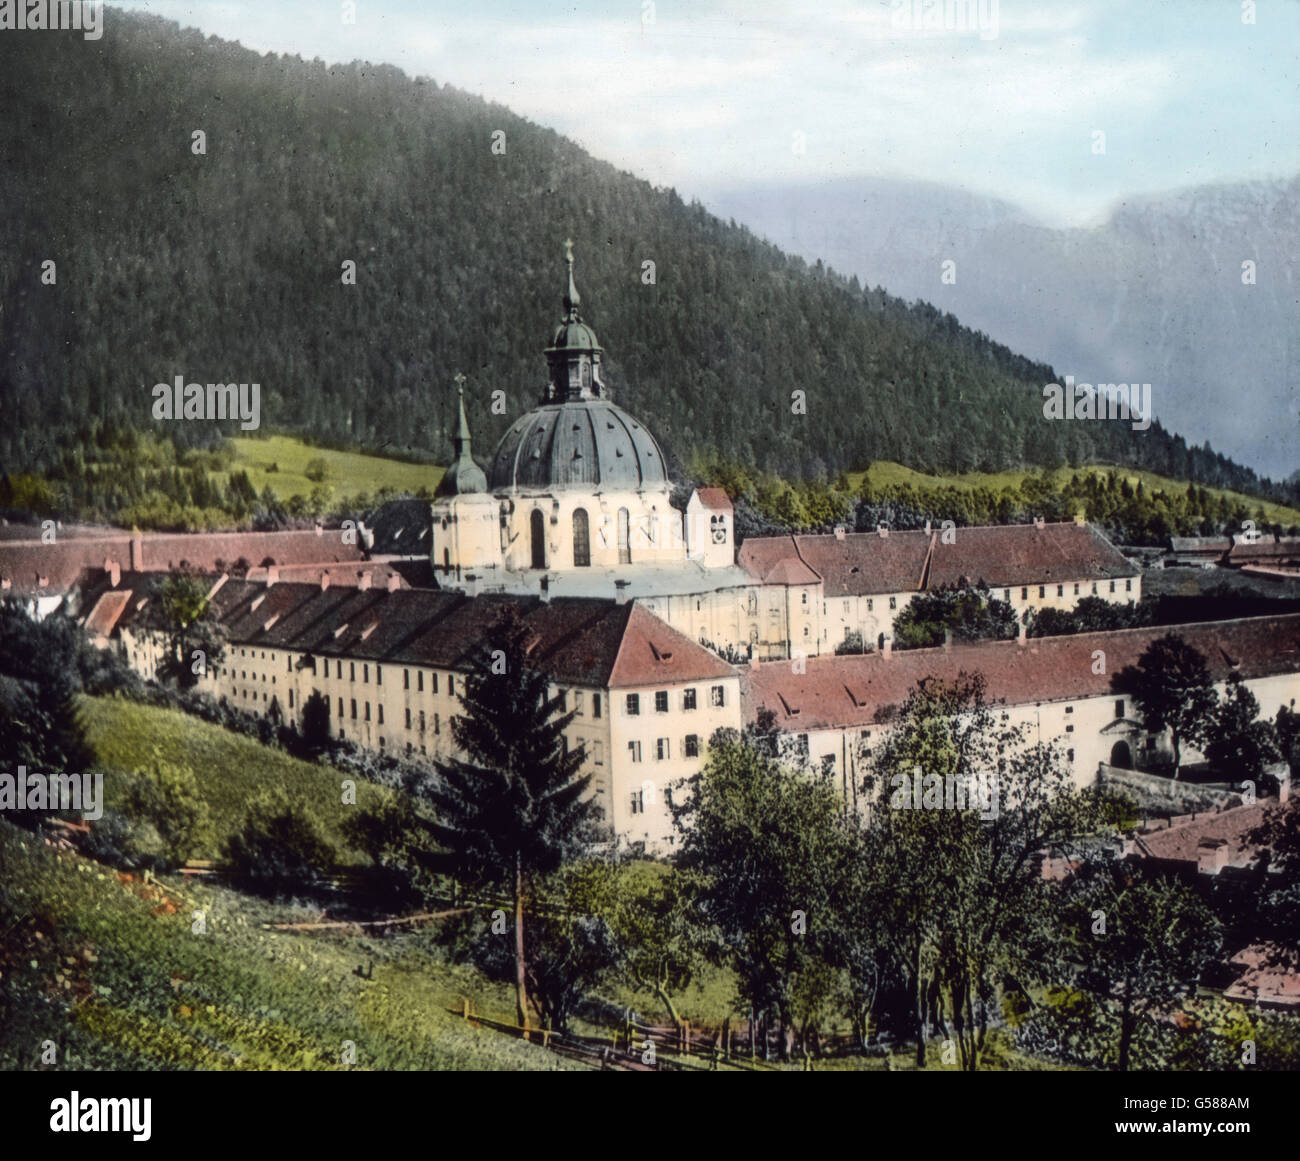 Die Straße, die von Oberau nach Ettal führt, gehört zu den schönsten Bergstraßen Bayerns. In großartigen Kehren windet sie sich den Berg hinauf, an tiefen Schluchten, steilen Abgründen vorbei. Wir haben die Höhe erreicht und zu unseren Füßen liegt in malerischer Ruhe  ringsum von Bergen umgeben das weltberühmte Kloster Ettal. Von weitem grüßt die herrliche Kuppel der Kirche. Kaiser Ludwig der Bayer ist der Erbauer der ursprünglichen Gnadenkirche, von der fast nichts mehr übrig geblieben ist als das Fundament und die Hauptmauern. In der Mitte des 18. Jahrhunderts entstand eine neue Kunstschöpfu Stock Photo